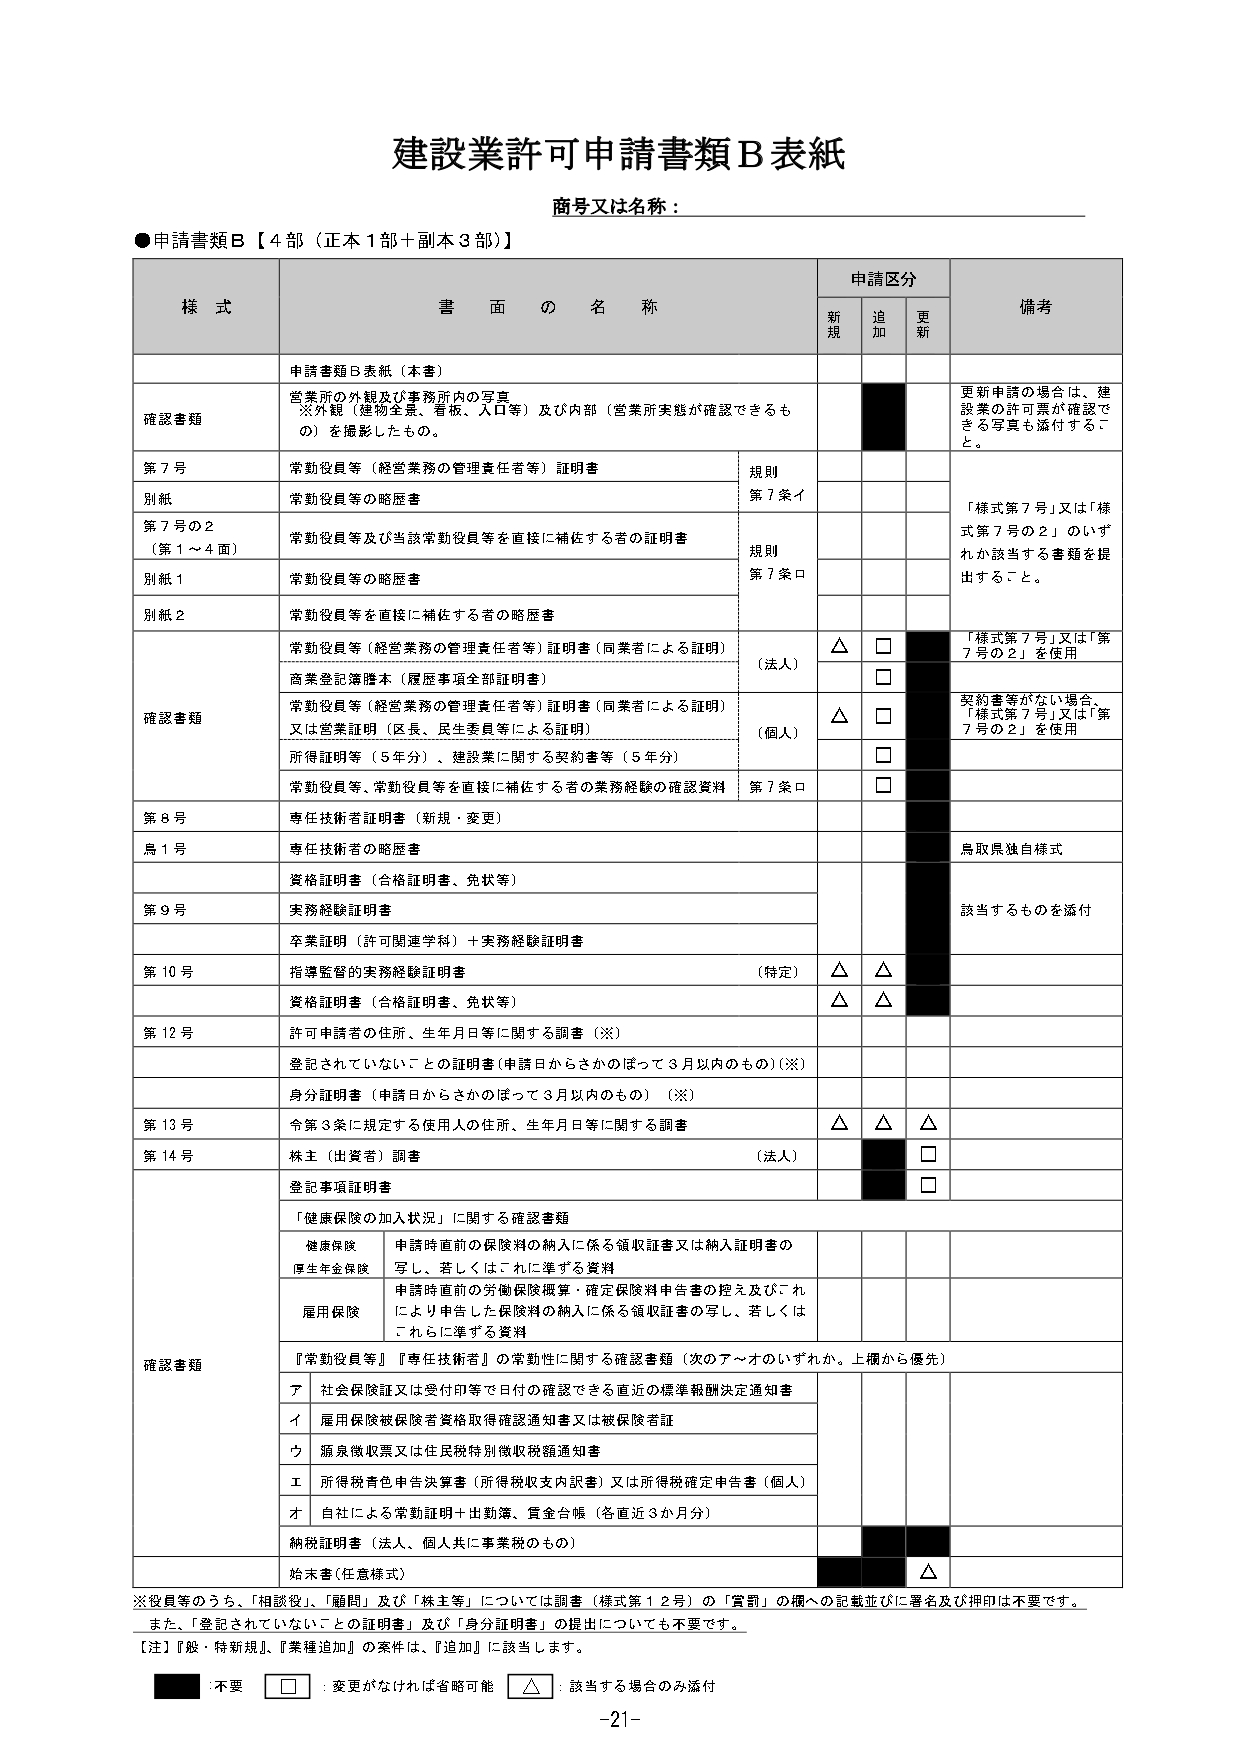 鳥取県の建設業許可書類